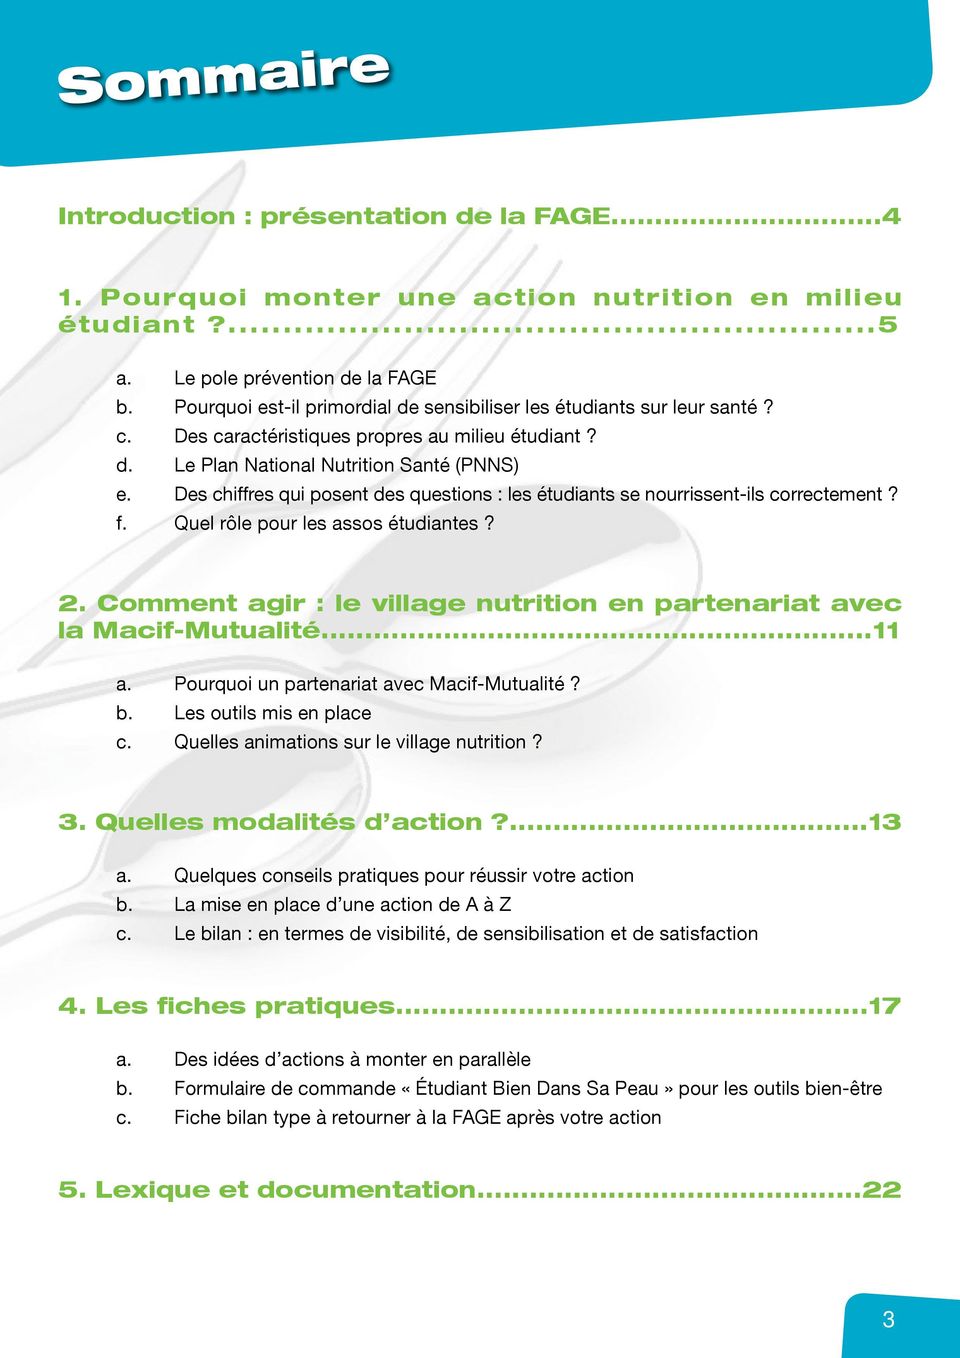 Des chiffres qui posent des questions : les étudiants se nourrissent-ils correctement? f. Quel rôle pour les assos étudiantes? 2.